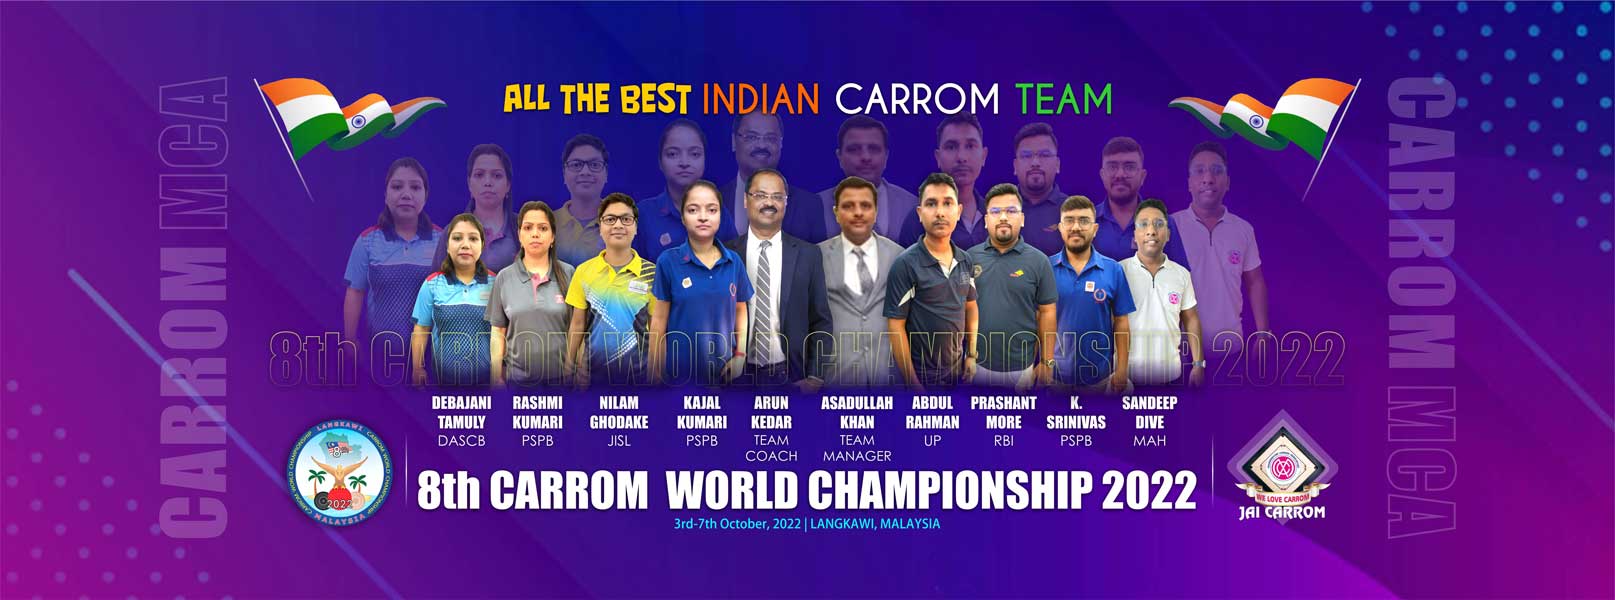 8th Carrom world Championship 2022, Langkawi, Malaysia